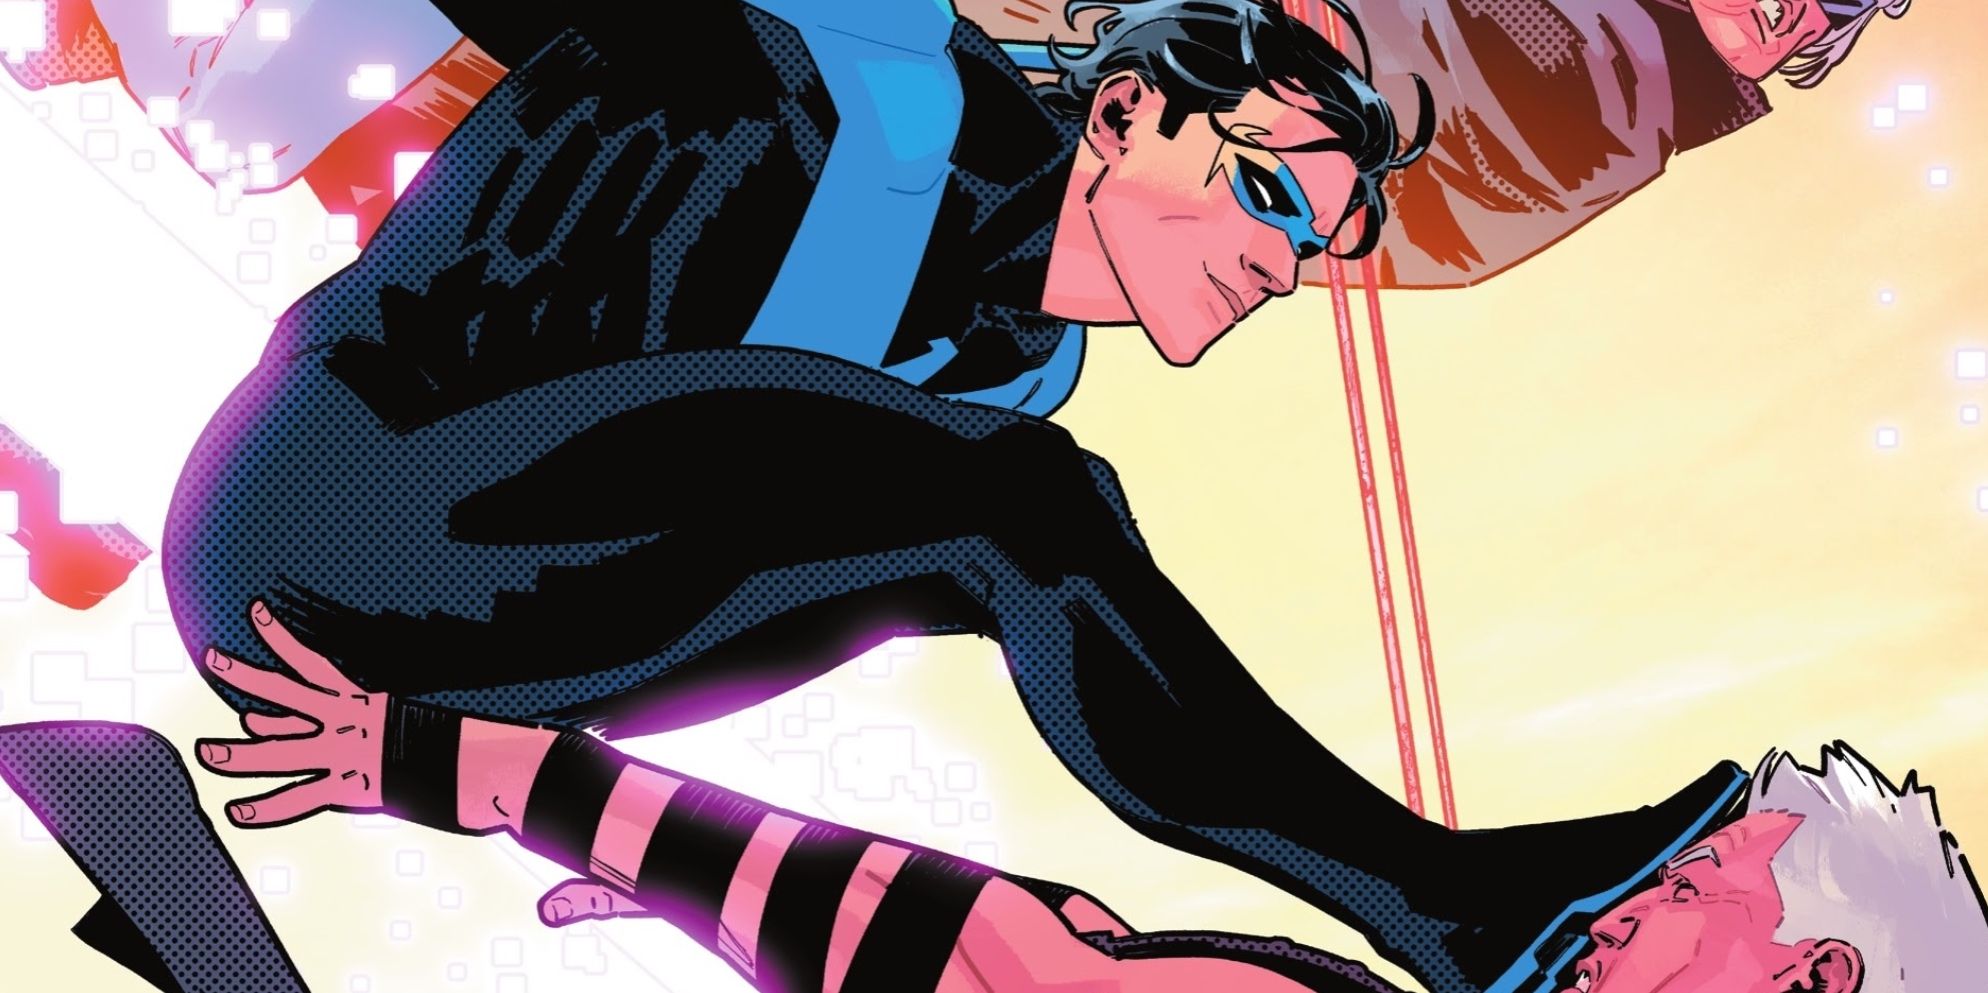 El ataque más brutal de Nightwing acaba de convertirse oficialmente en su movimiento característico